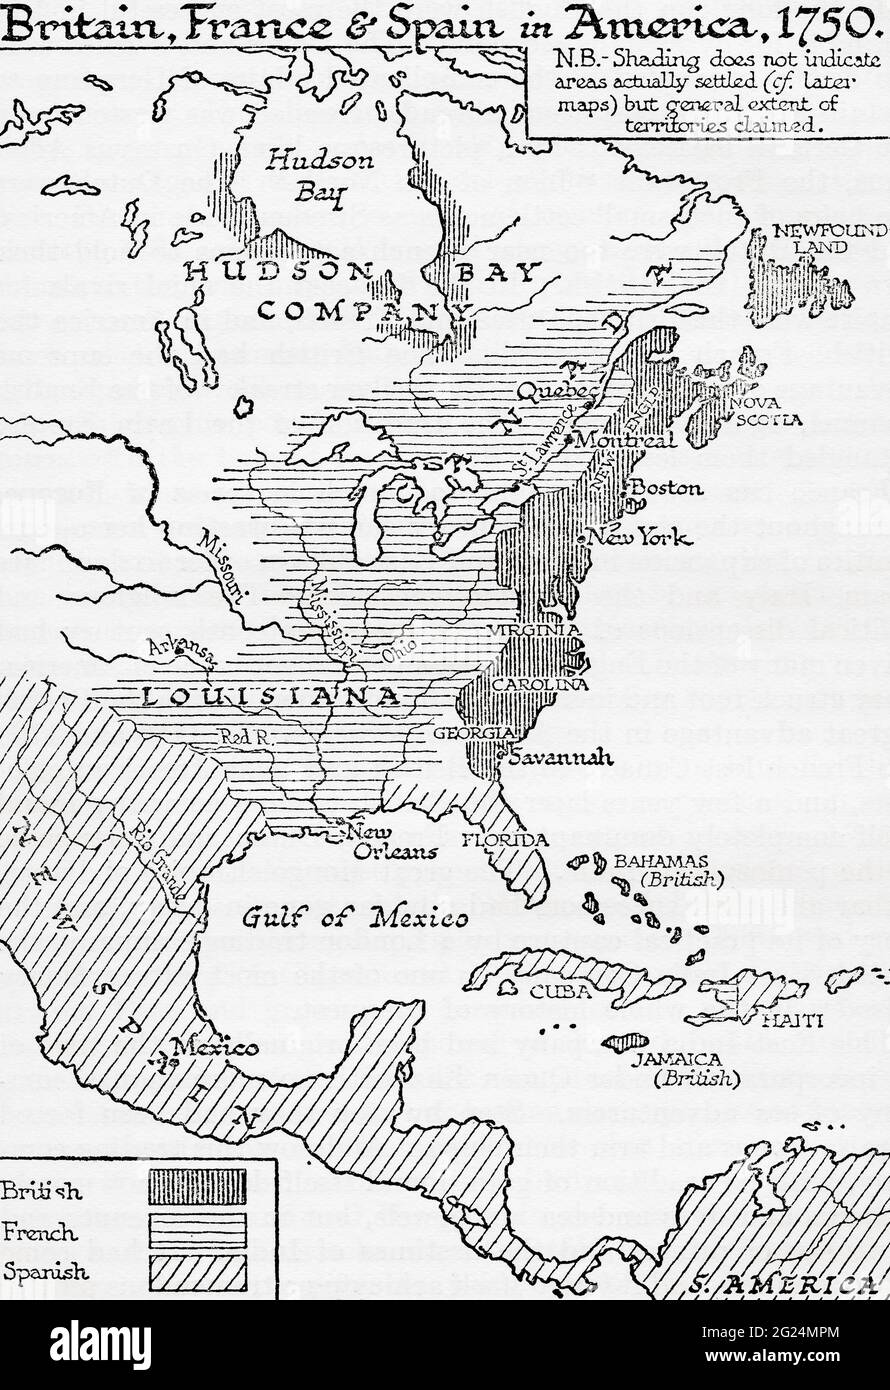 Carte montrant la Grande-Bretagne, la France et l'Espagne en Amérique, 1750. Tiré d'UNE brève histoire du monde, publié vers 1936 Banque D'Images